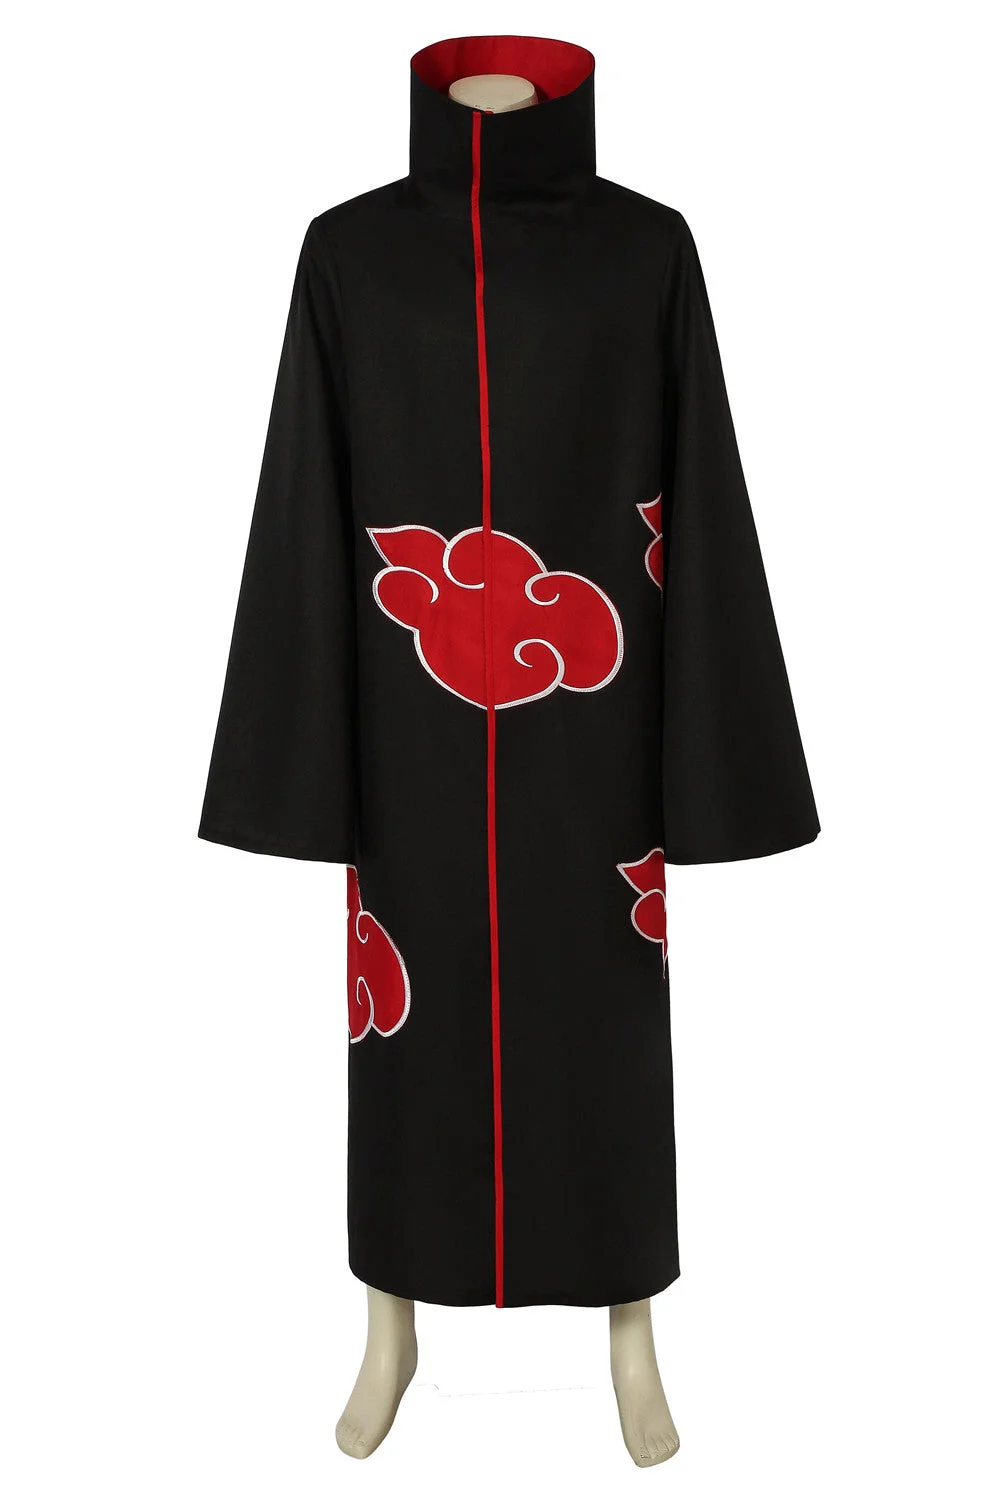 Naruto Itachi Uchiha Cosplay Cloak Halloween Costume